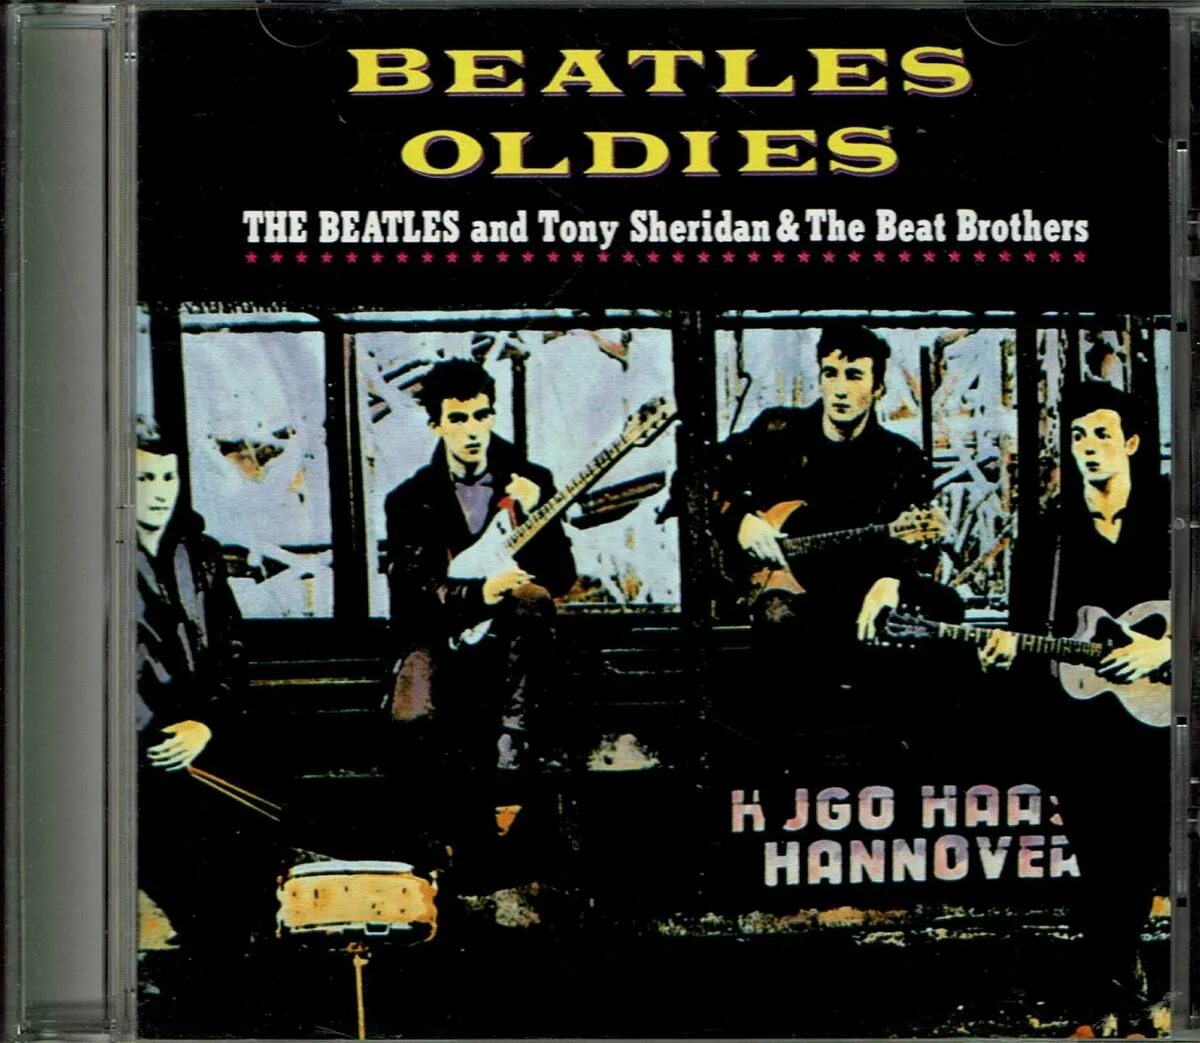 Beat brothers. Tony Sheridan and the Beatles. Beatles with Tony Sheridan. The Beatles' first Тони Шеридан. Фото Beatles with Tony Sheridan.